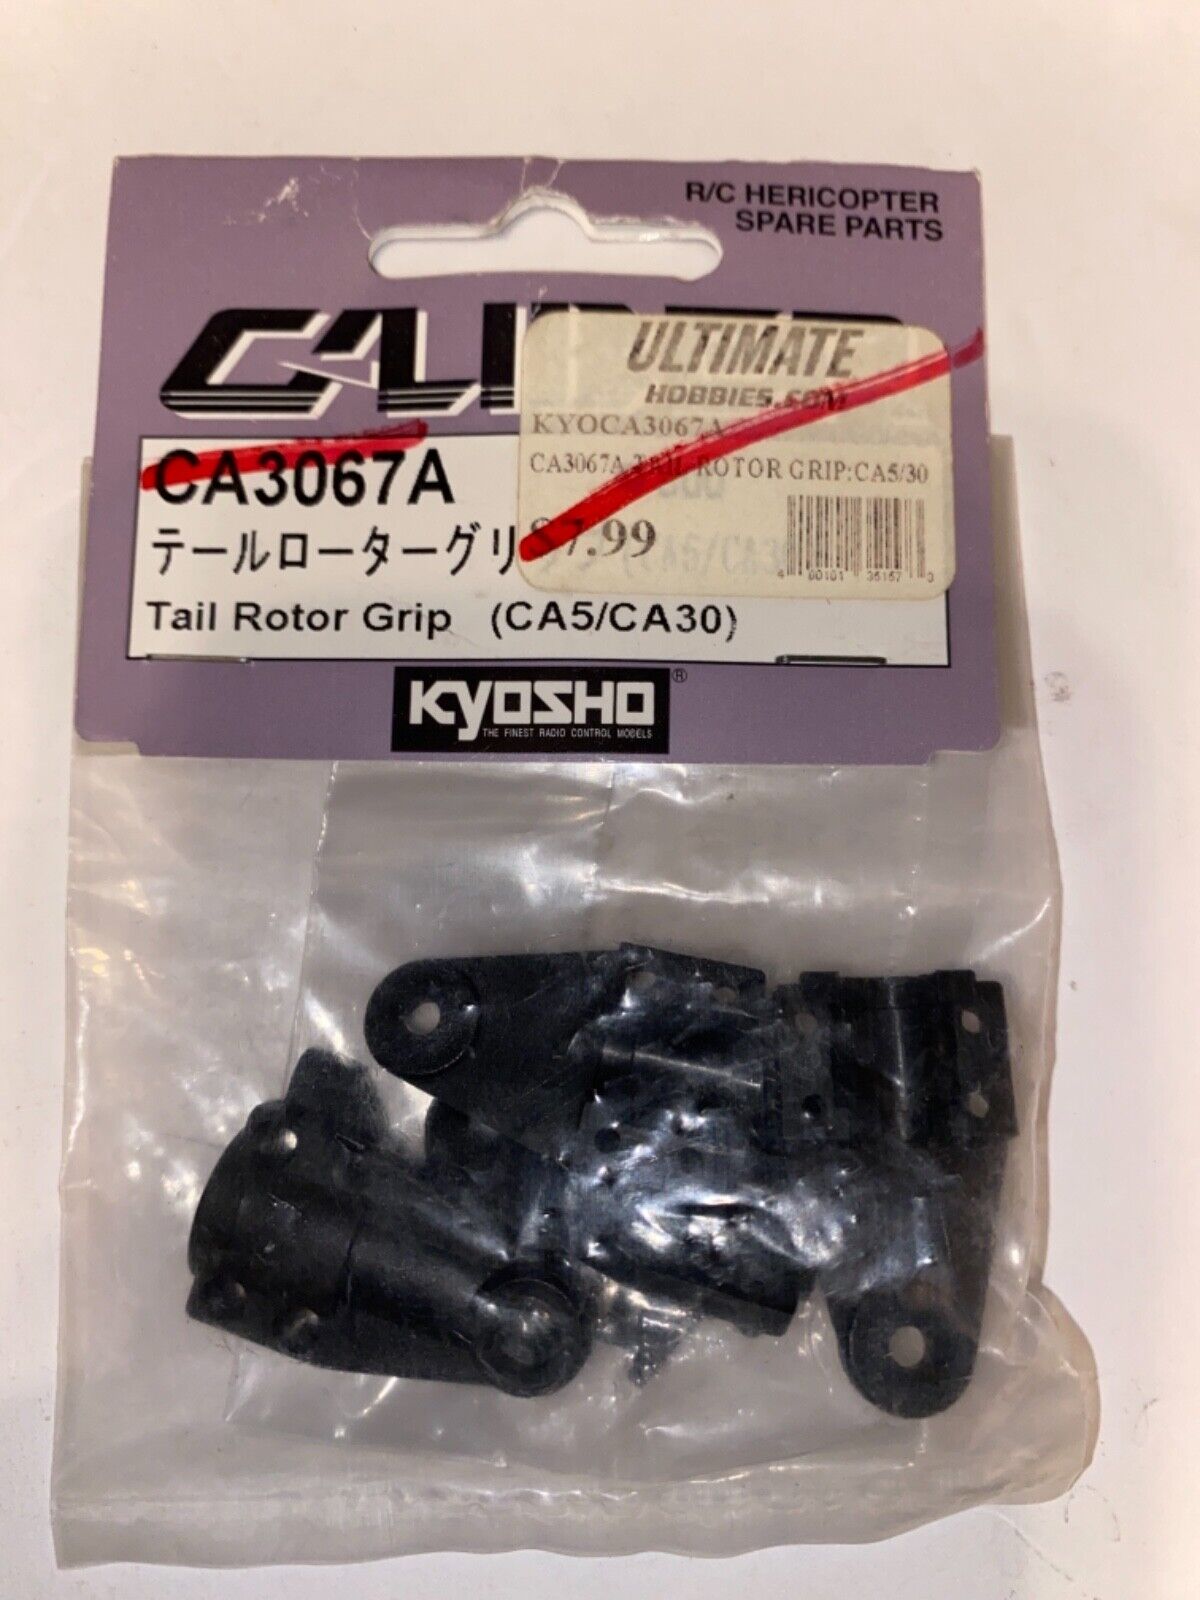 CALIBER Tail Rotor Grip (CA5/CA30) #CA3067A